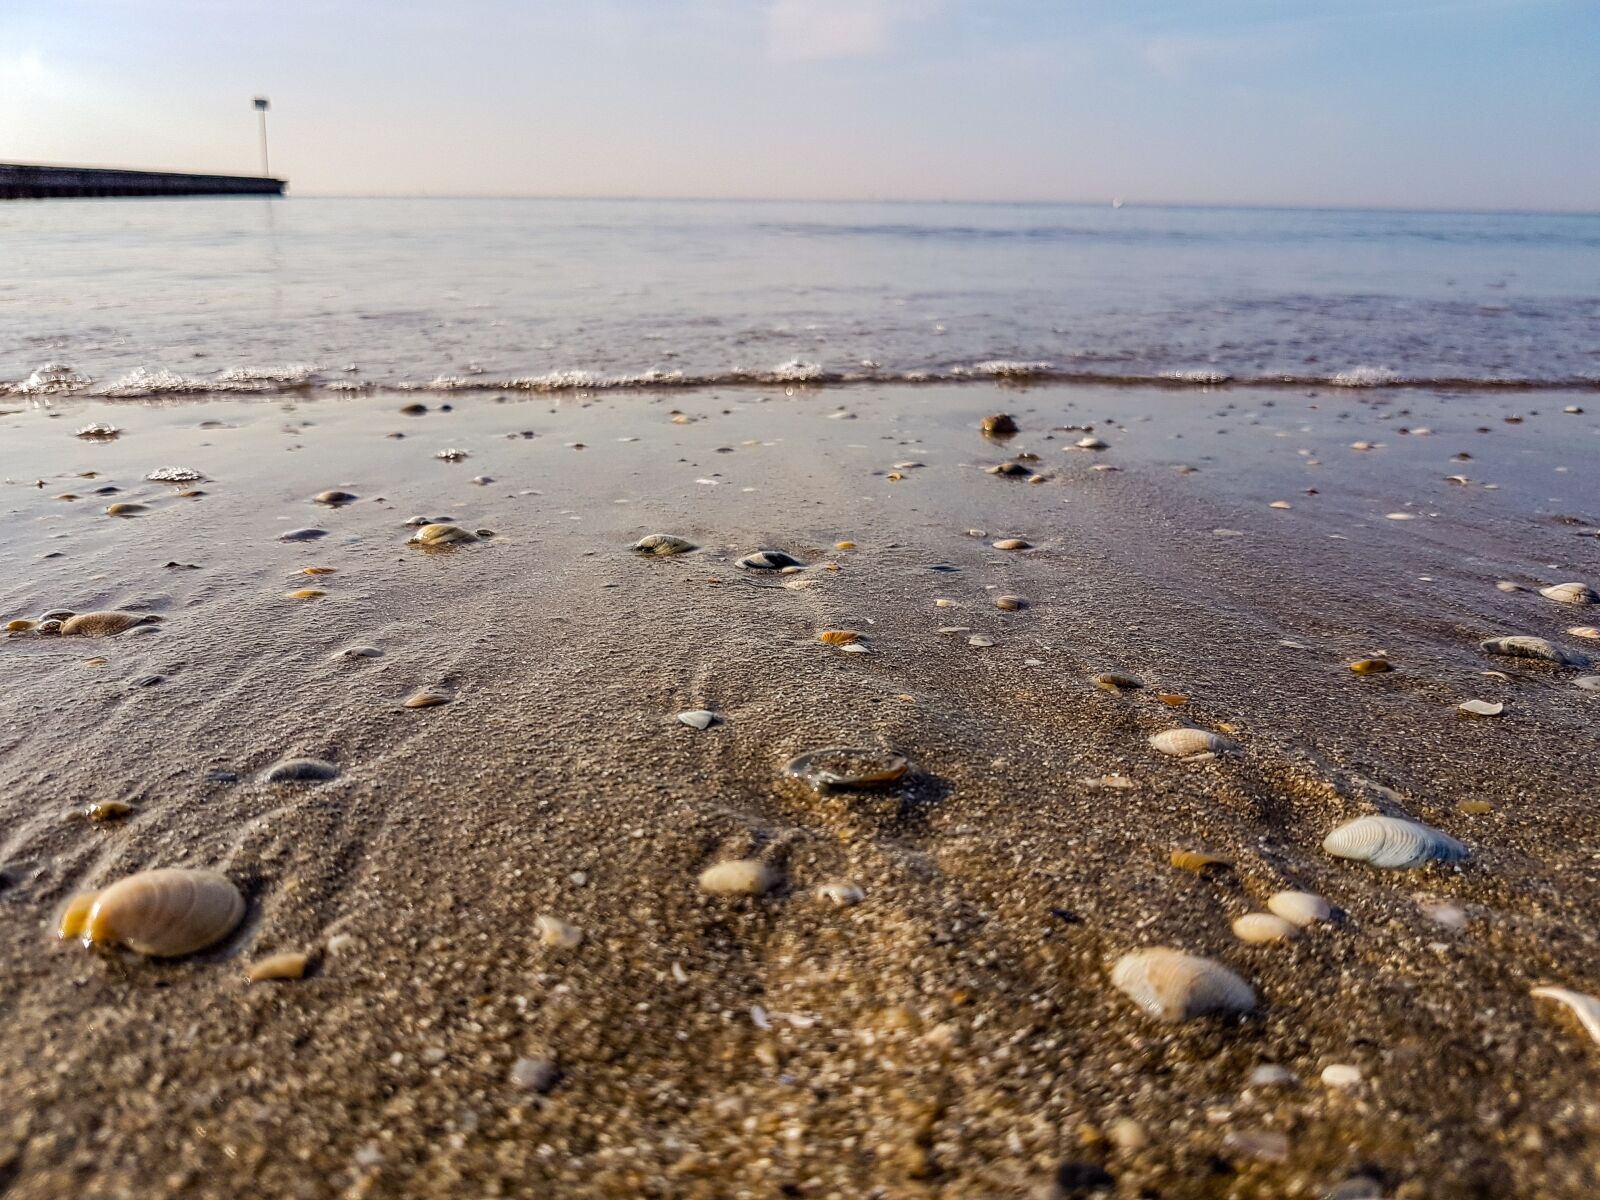 Samsung Galaxy S7 Rear Camera sample photo. Sea, sand, sun photography